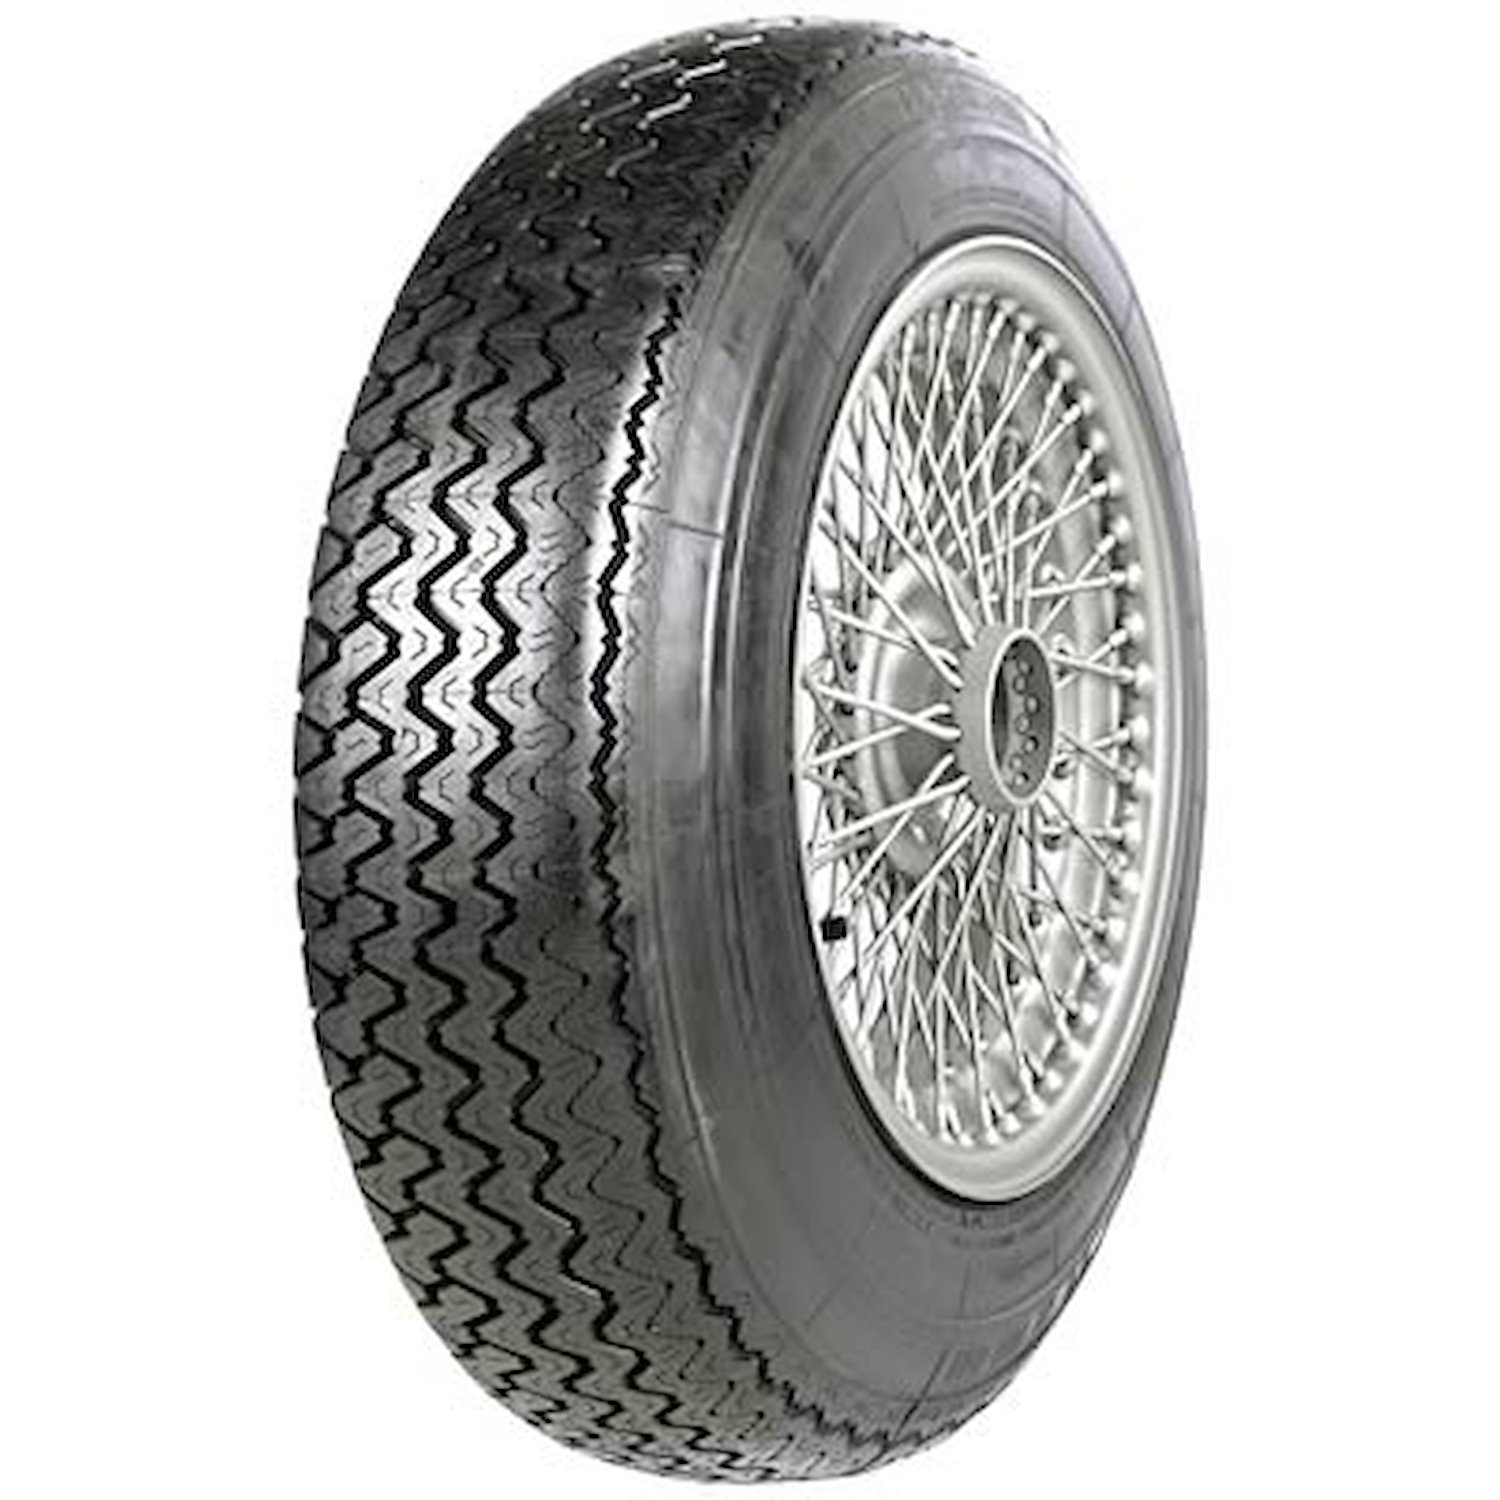 56050 Tire, Michelin XAS-FF, 155HR15 82H